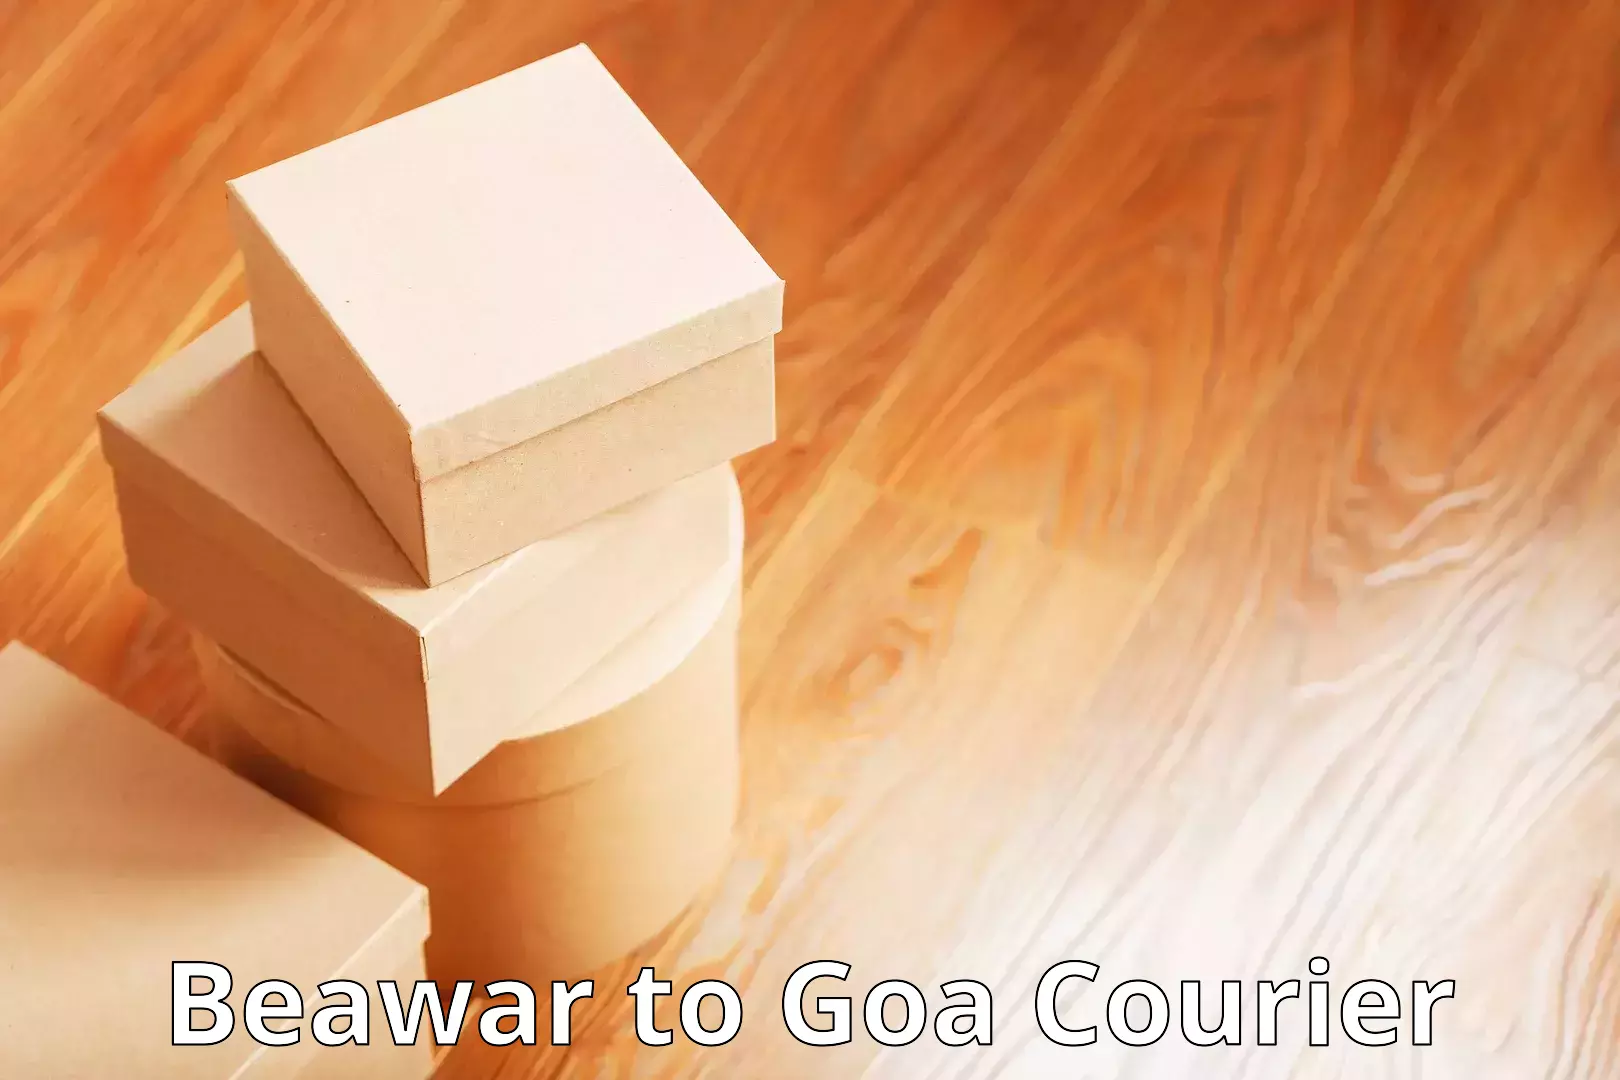 Efficient cargo services Beawar to IIT Goa